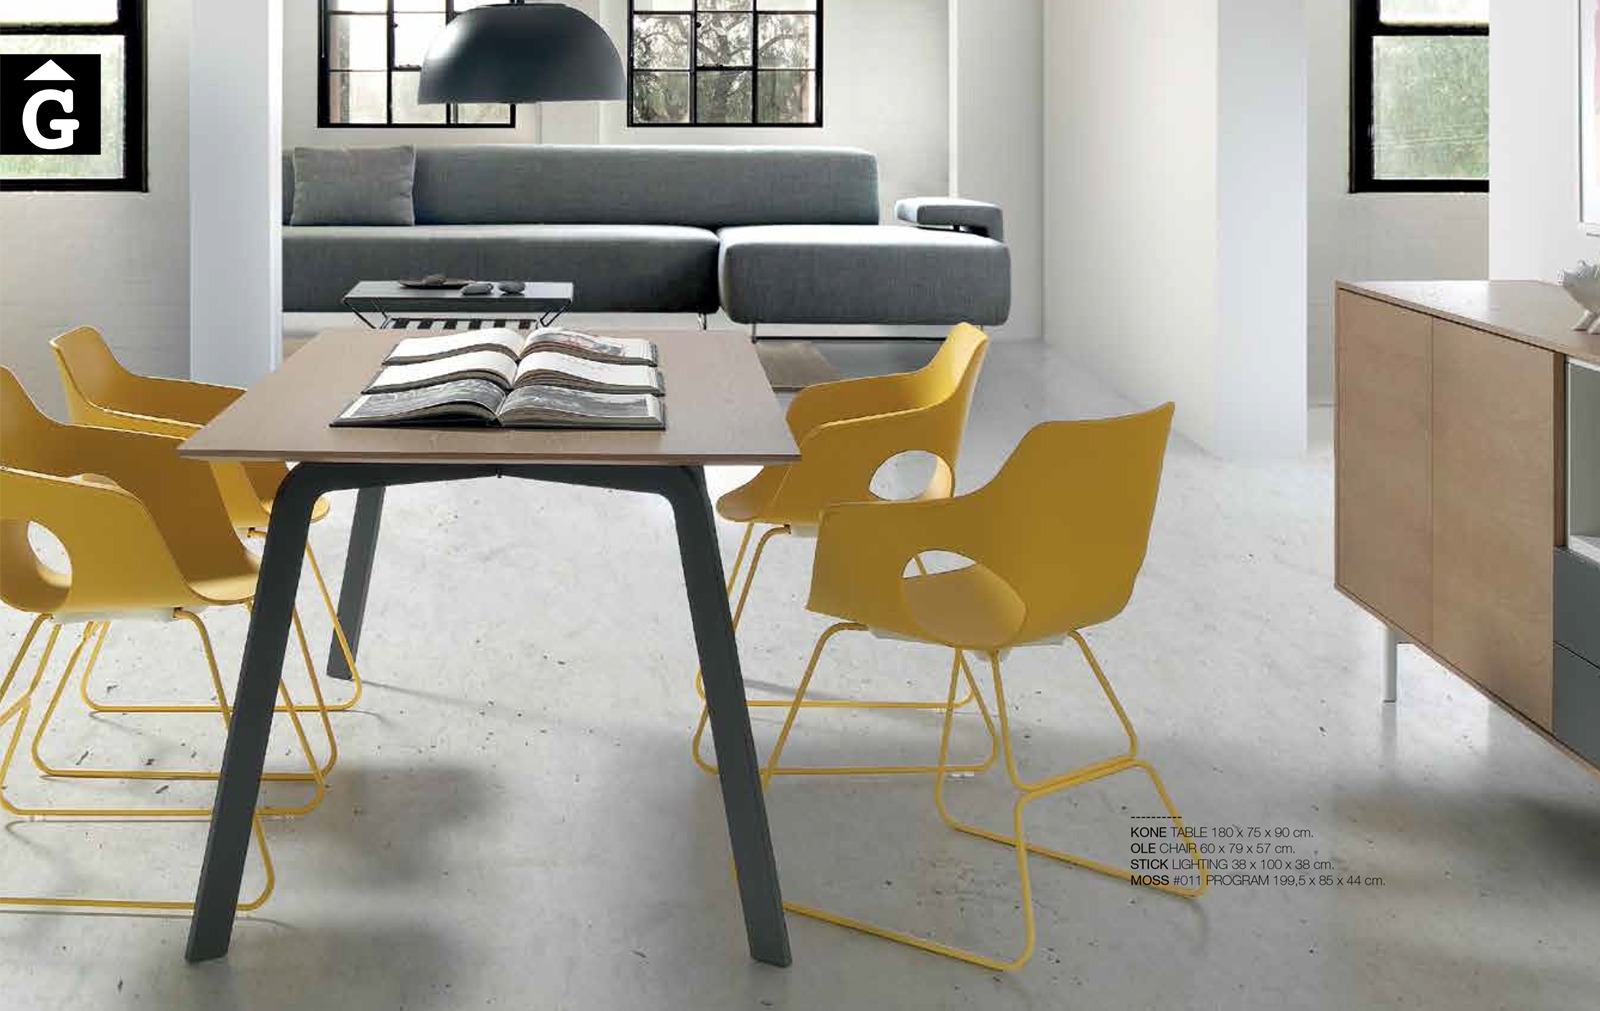 42 0 Loyra muebles by mobles Gifreu Idees per la llar moble de qualitat